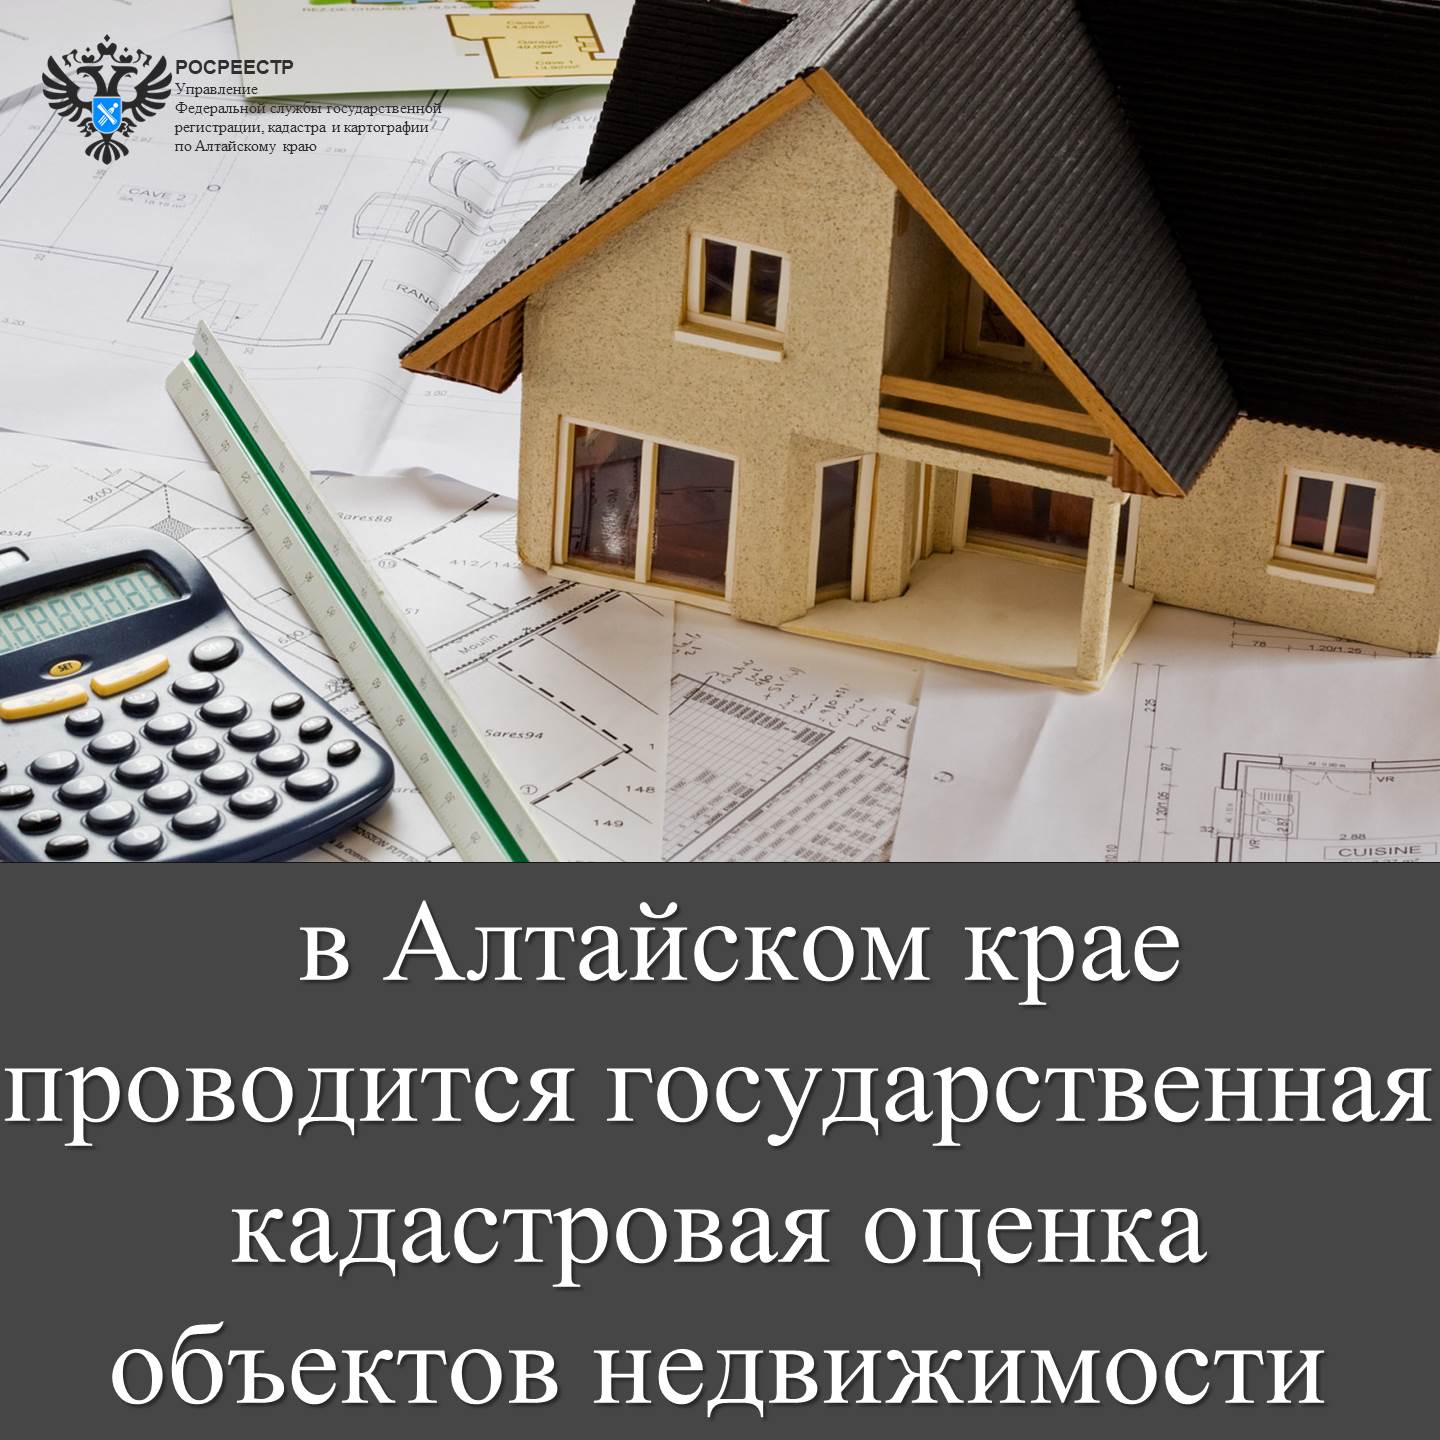 Государственная кадастровая оценка объектов недвижимости.